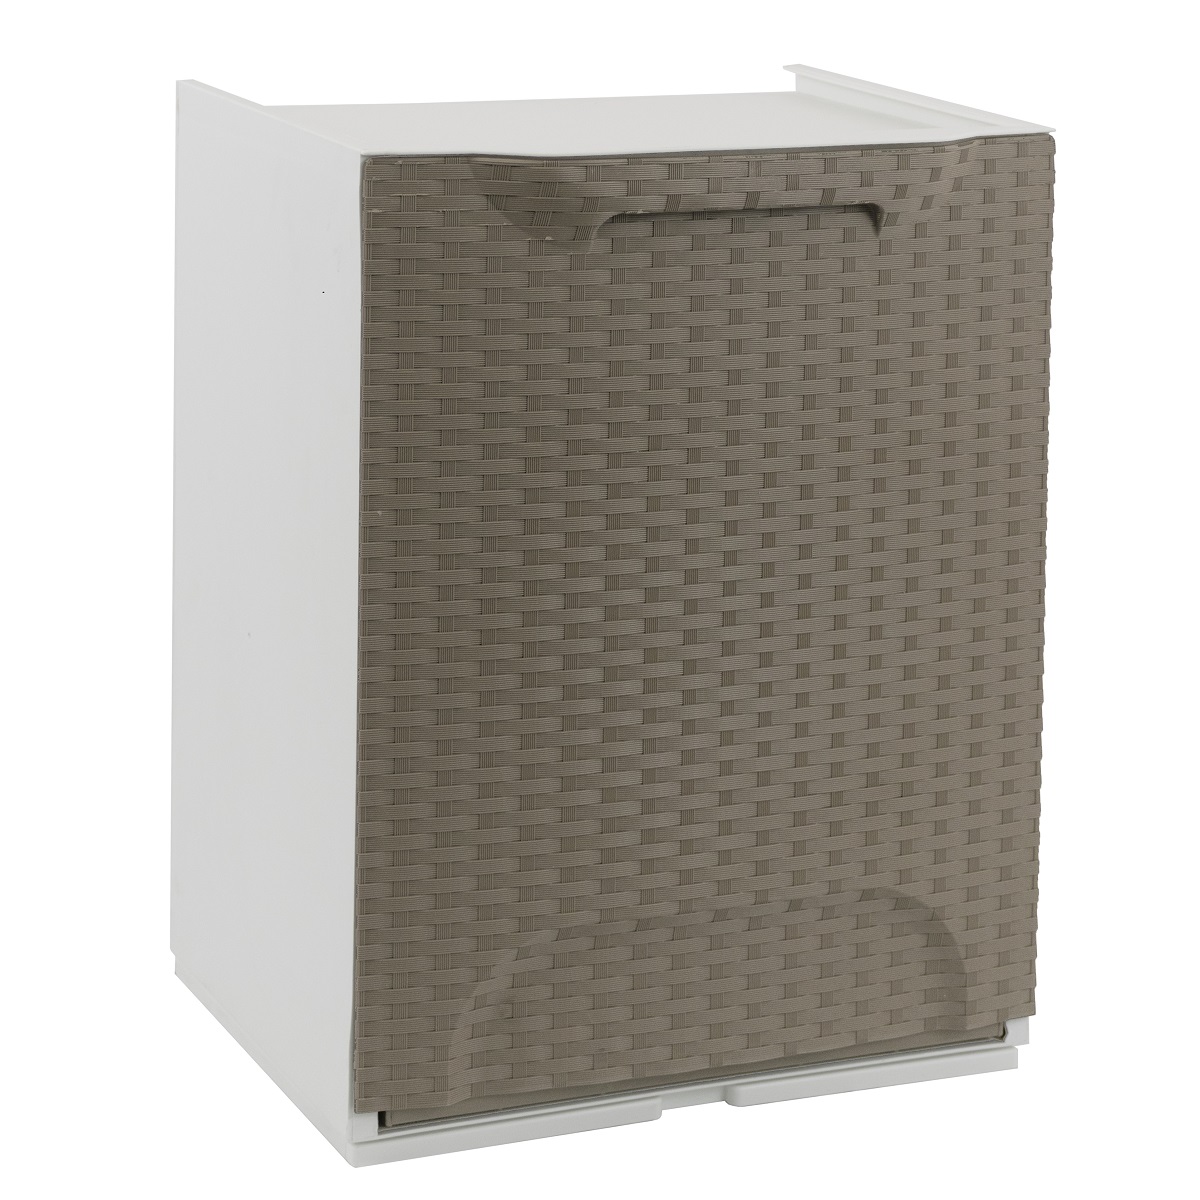 Úložný box/koš výklopný RATTAN taupe/bílý 34x29x47 cm